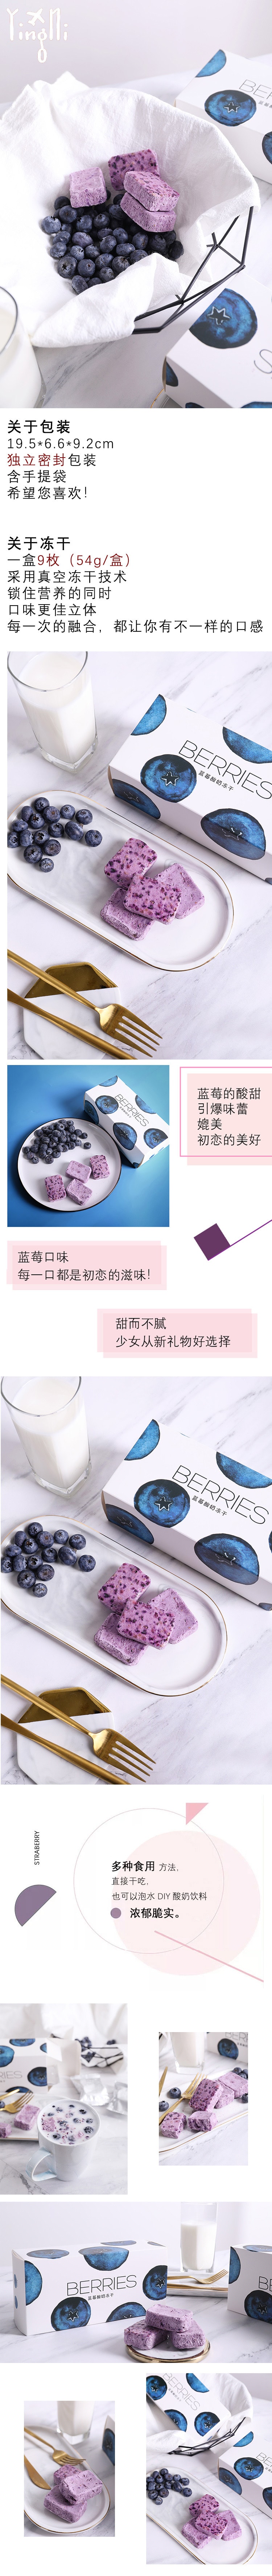 【中国直邮】英尼 蓝莓酸奶冻干零食 54g/盒